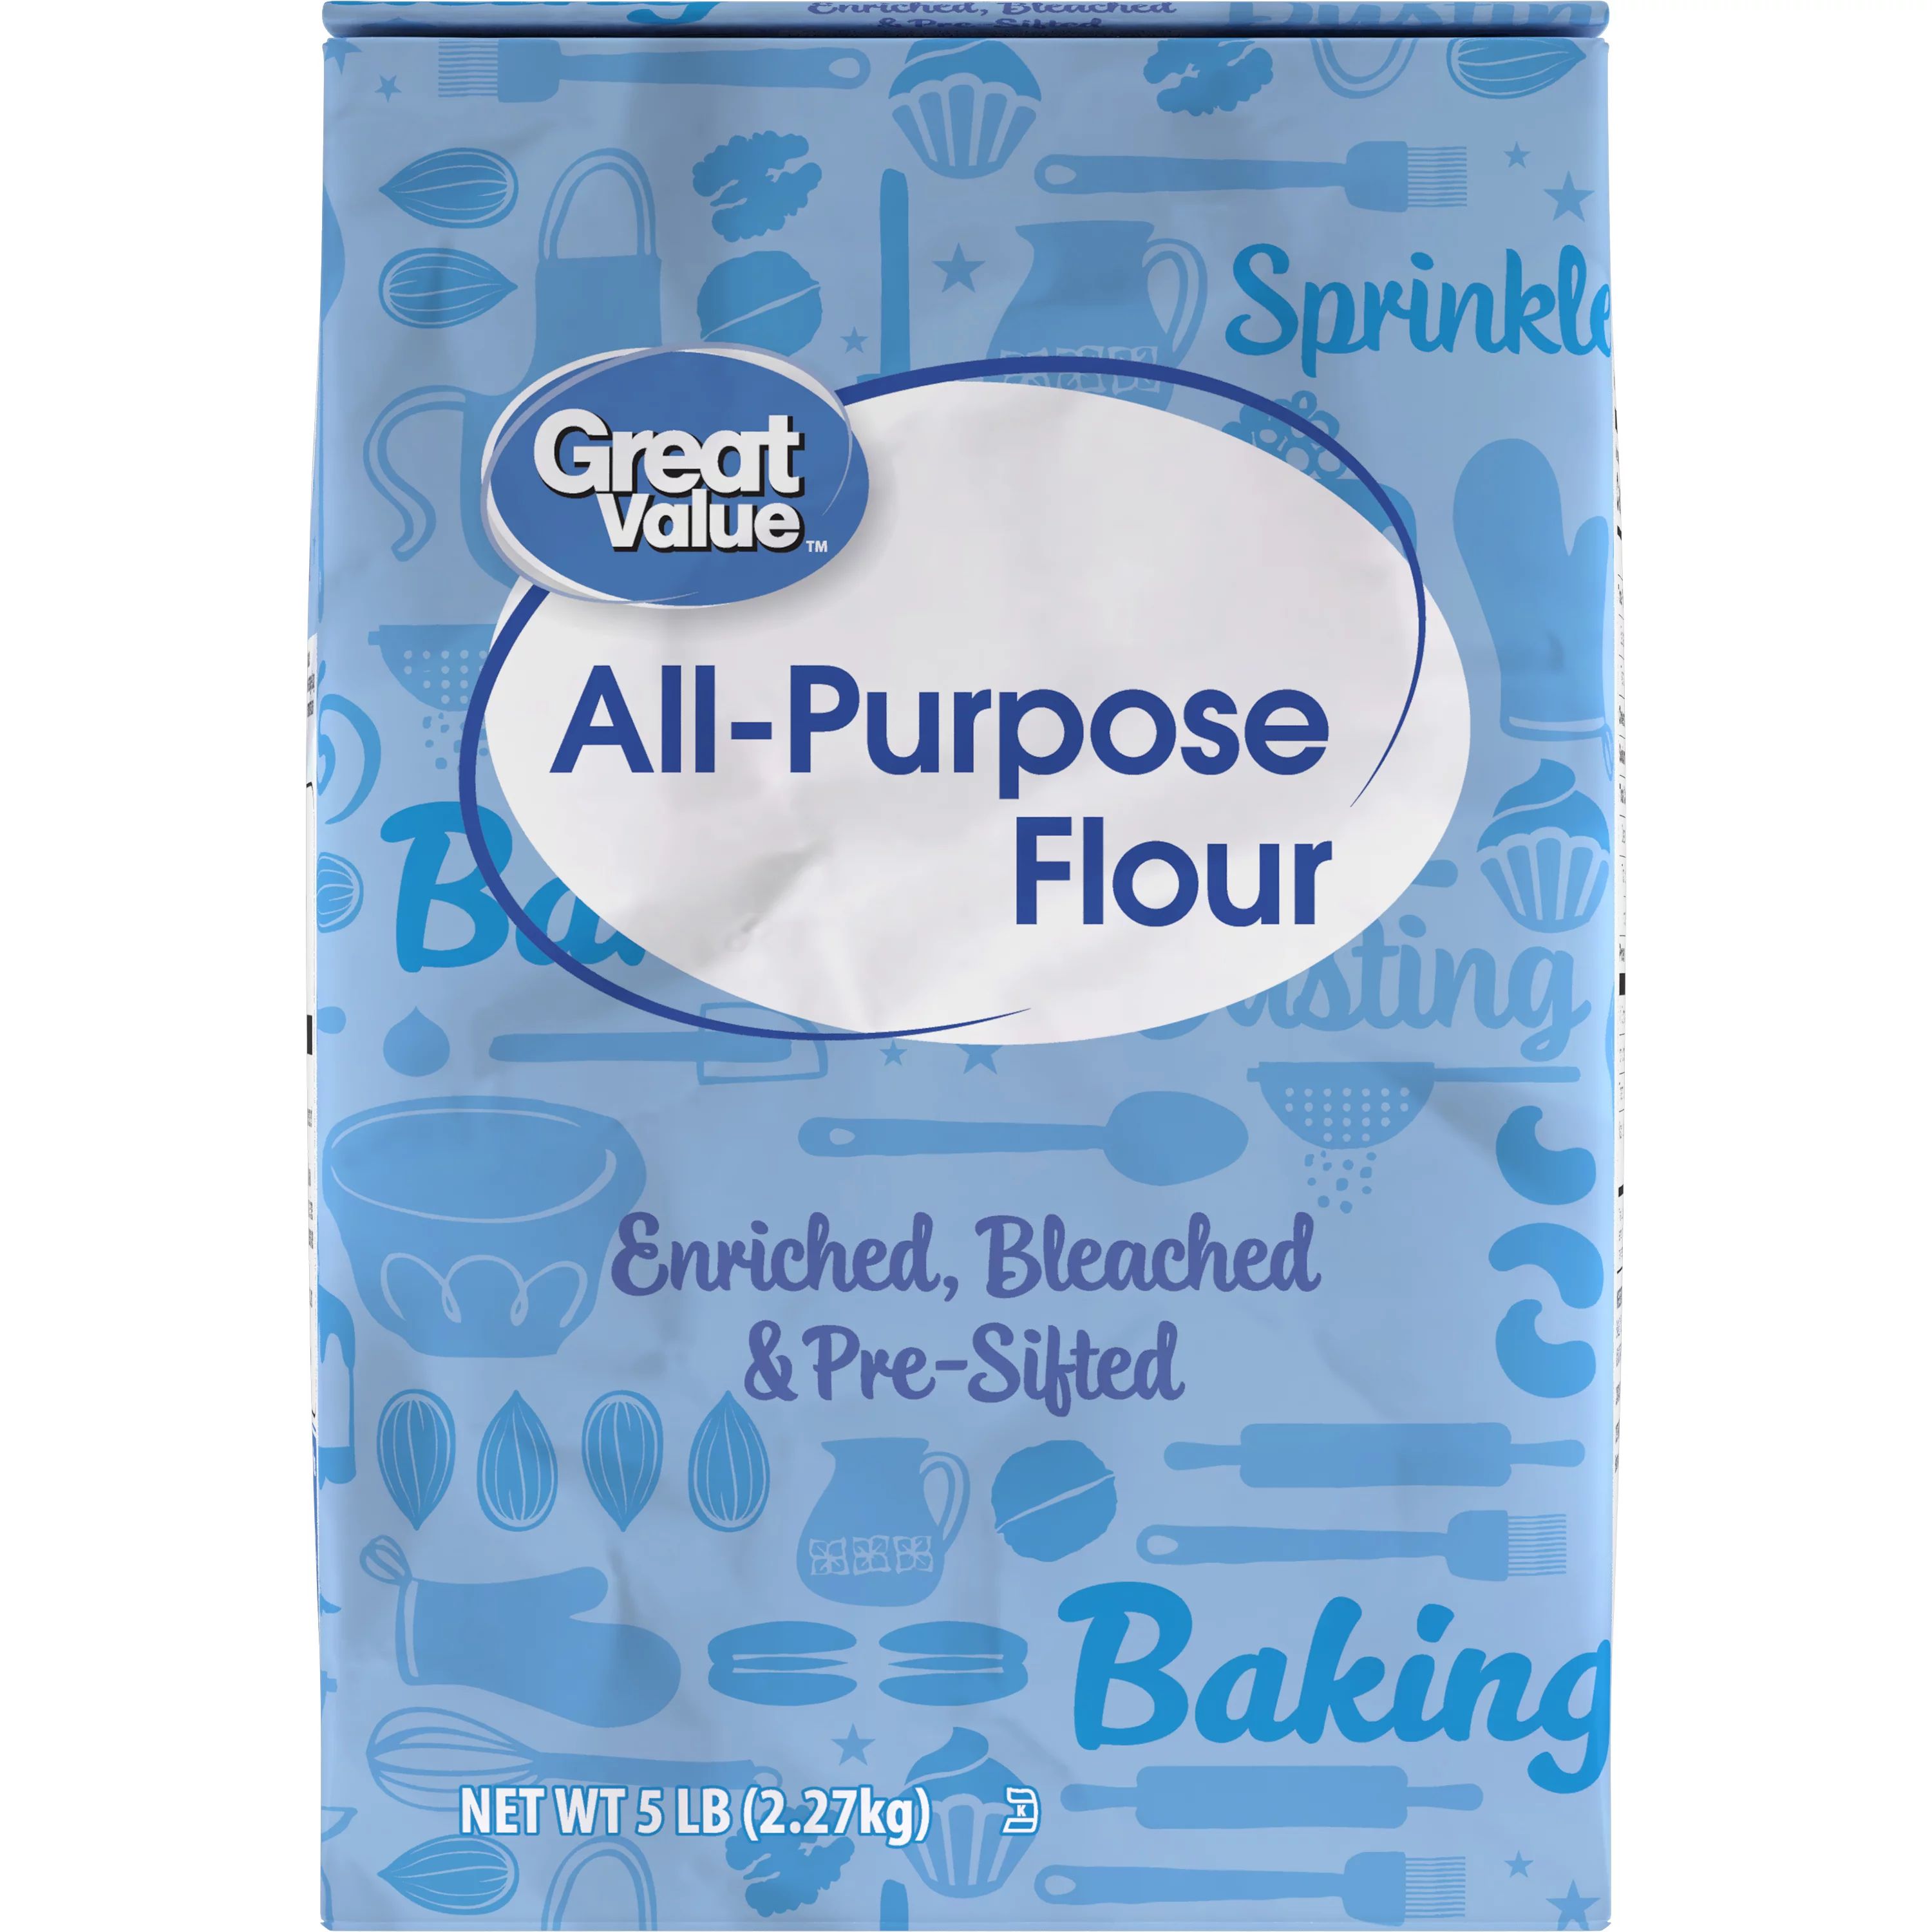 Great Value All-Purpose Flour, 5LB Bag - Walmart.com | Walmart (US)